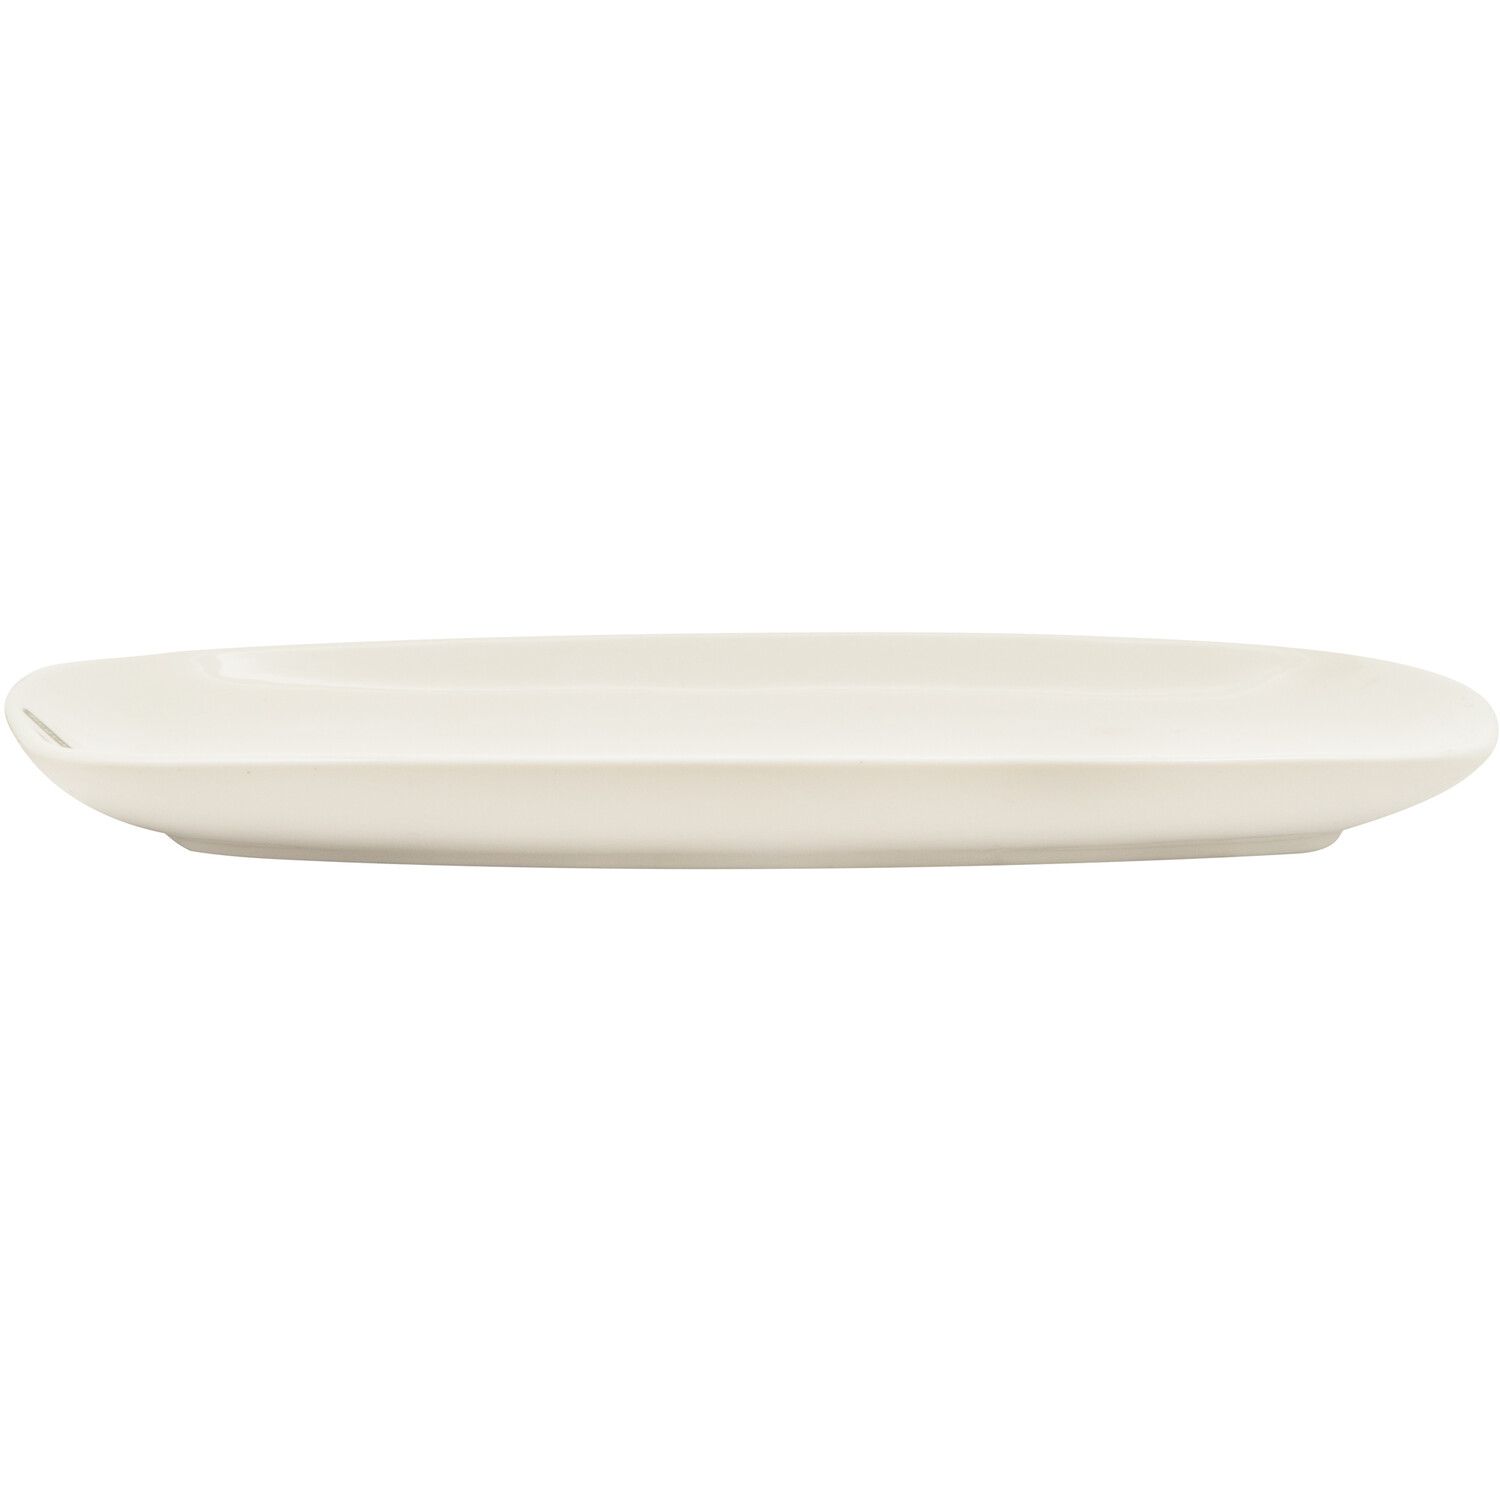 Regency Porcelain Oval Platter - White / 30.7cm Image 2